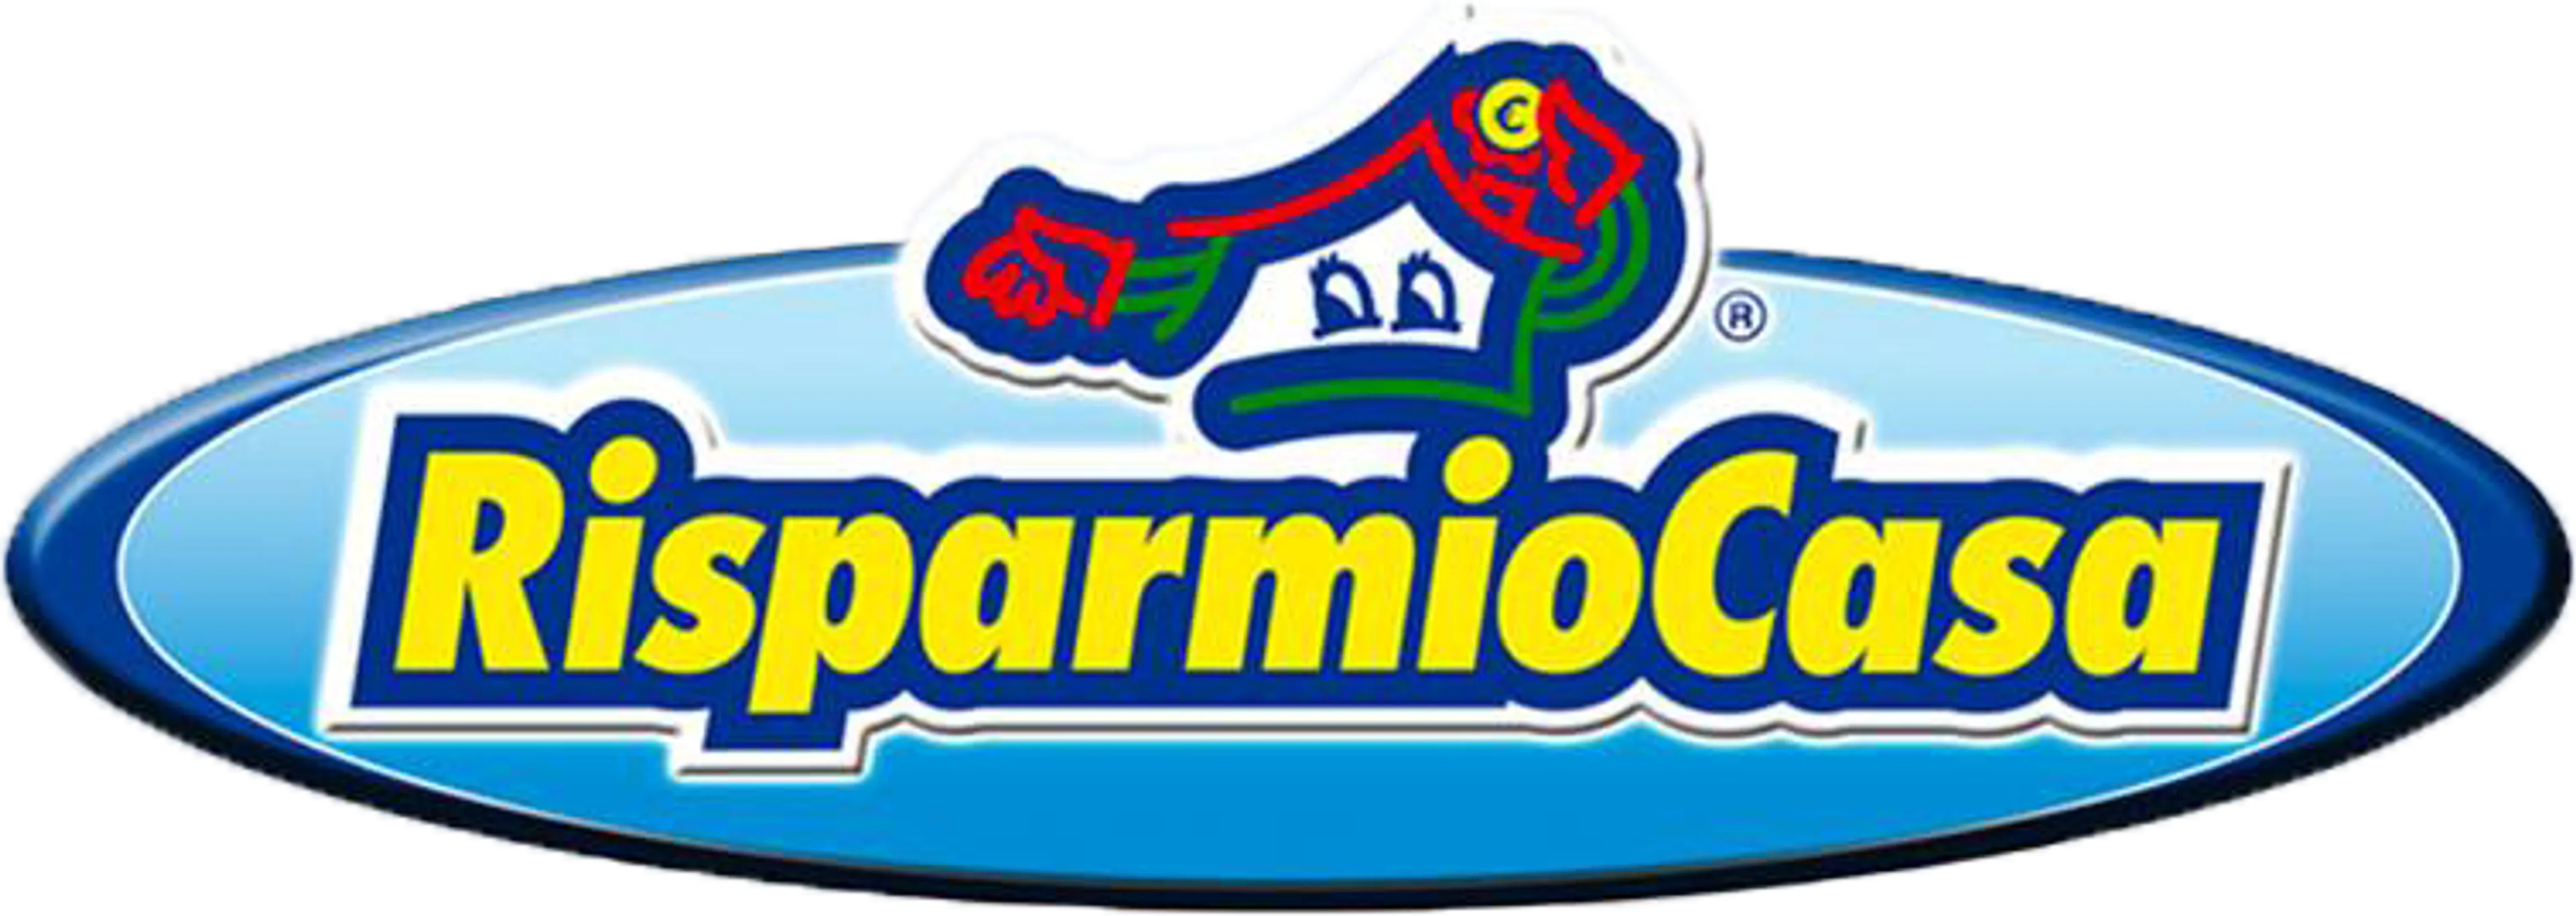 RISPARMIO CASA logo